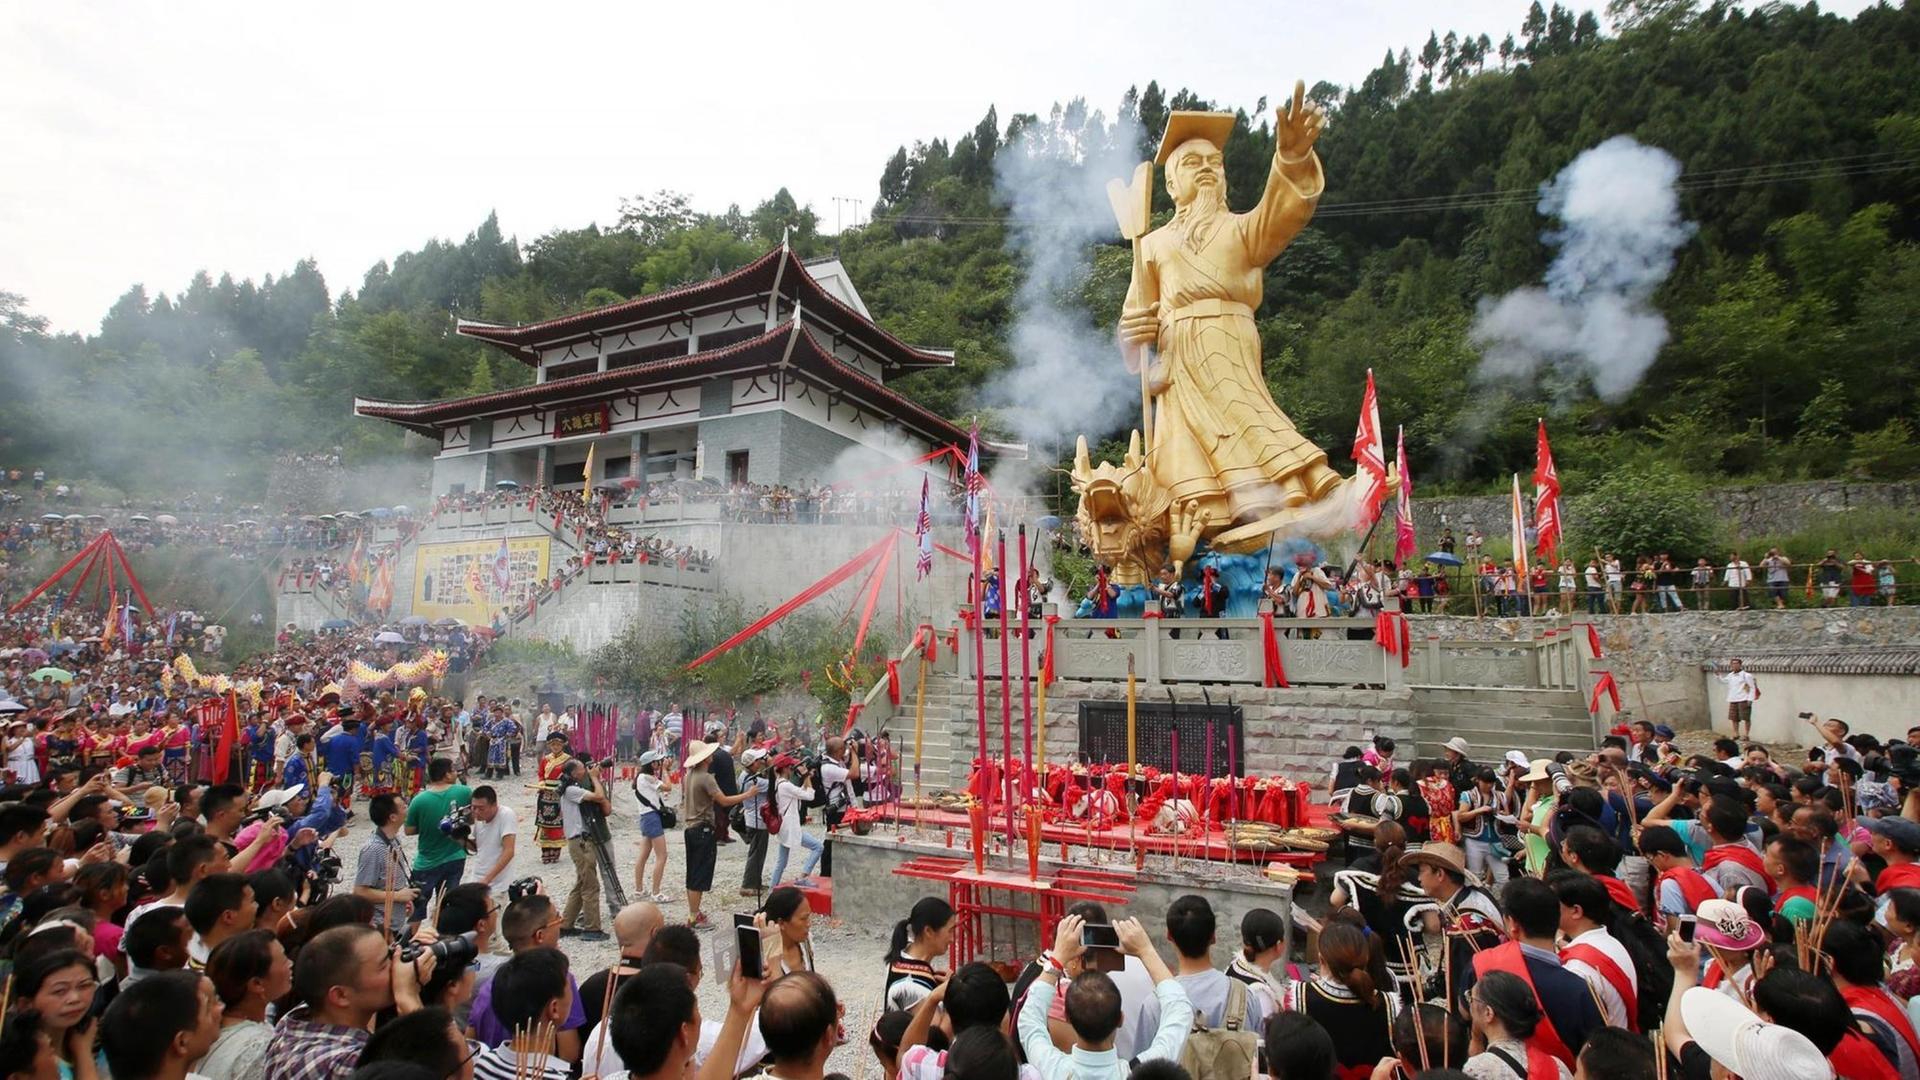 Menschen der Autonomen Region Beichuan Qiang feiern den Geburtstag des legänderen Kaisers Yu der Große, welcher dem Mythos nach das Wasser nach der Großen Flut zurückgedrängt haben soll und als Begründer der Xia-Dynastie gilt